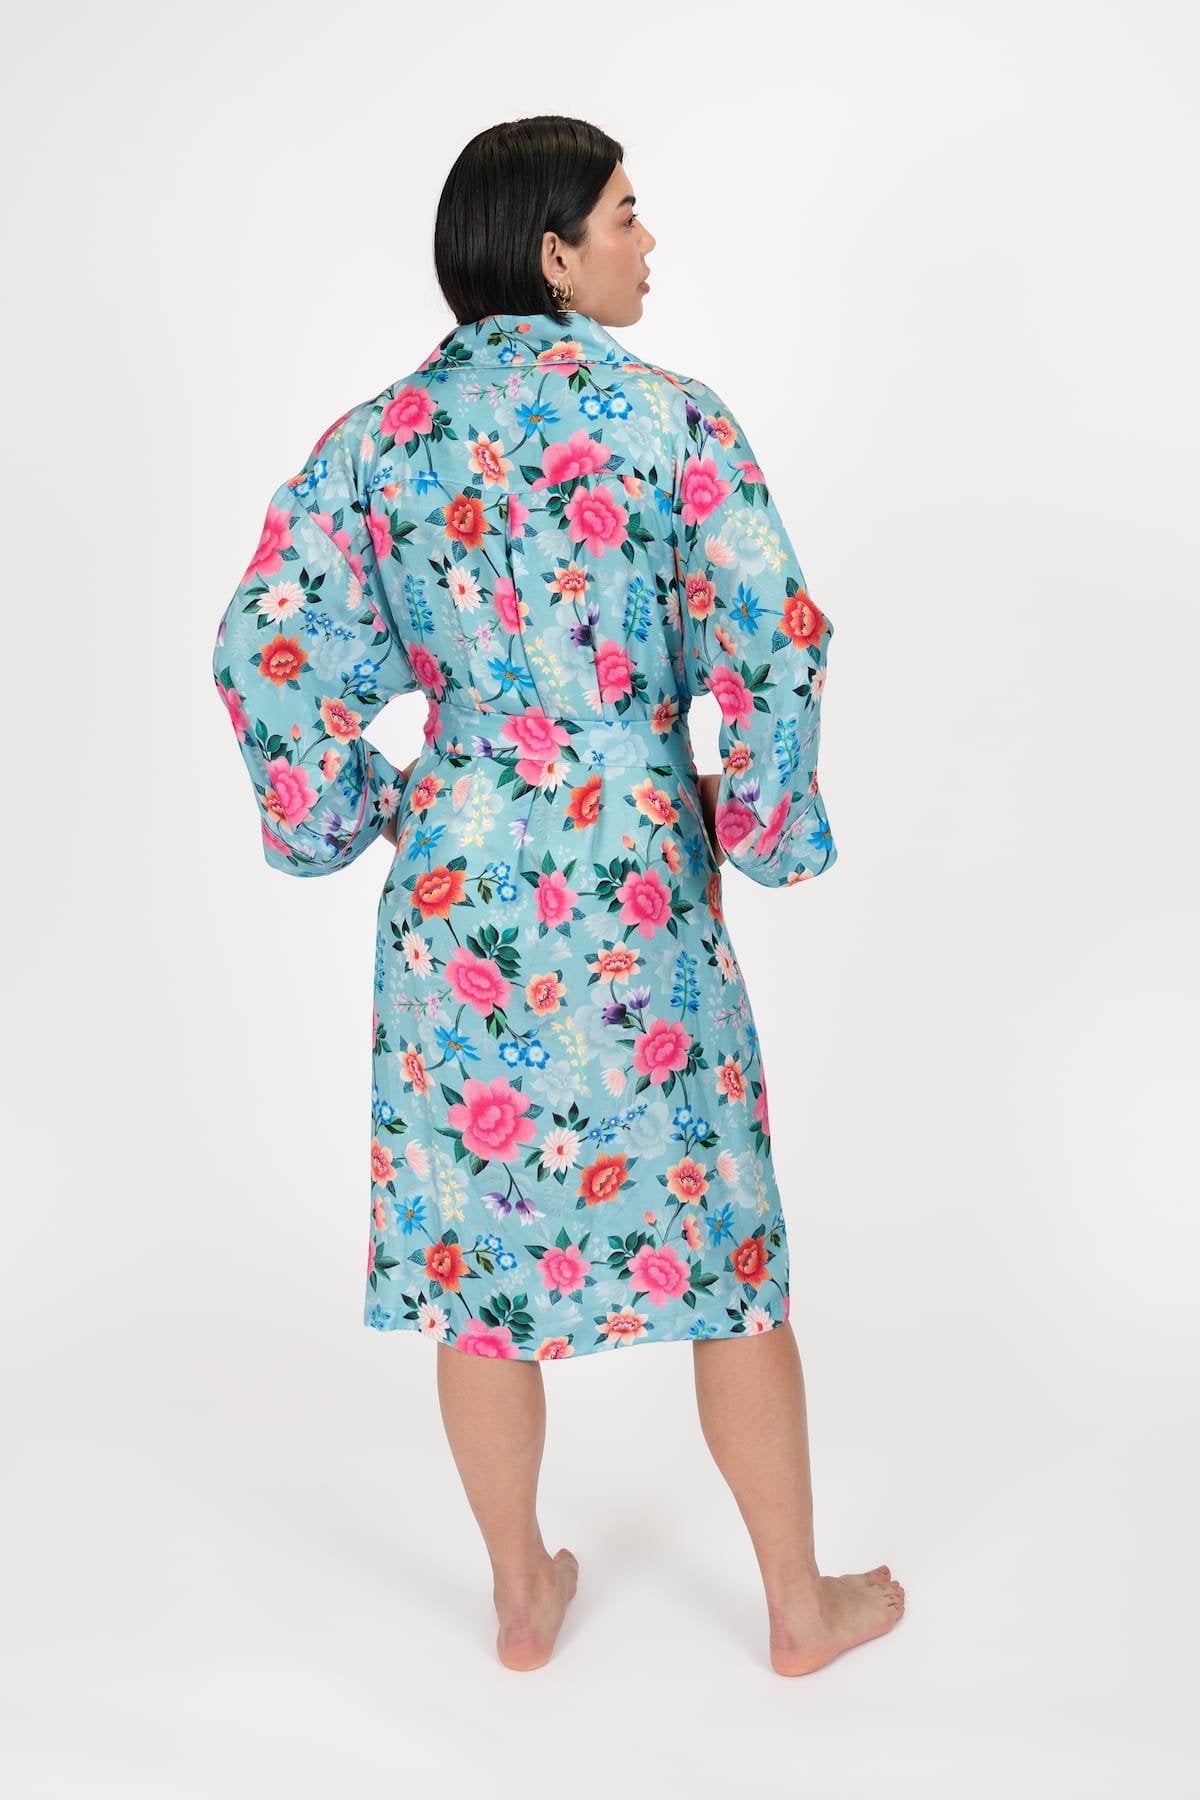 Elizabeth Kimono Robe - Front Main 2 - Luxury Kimono Robes - Orchard Moon